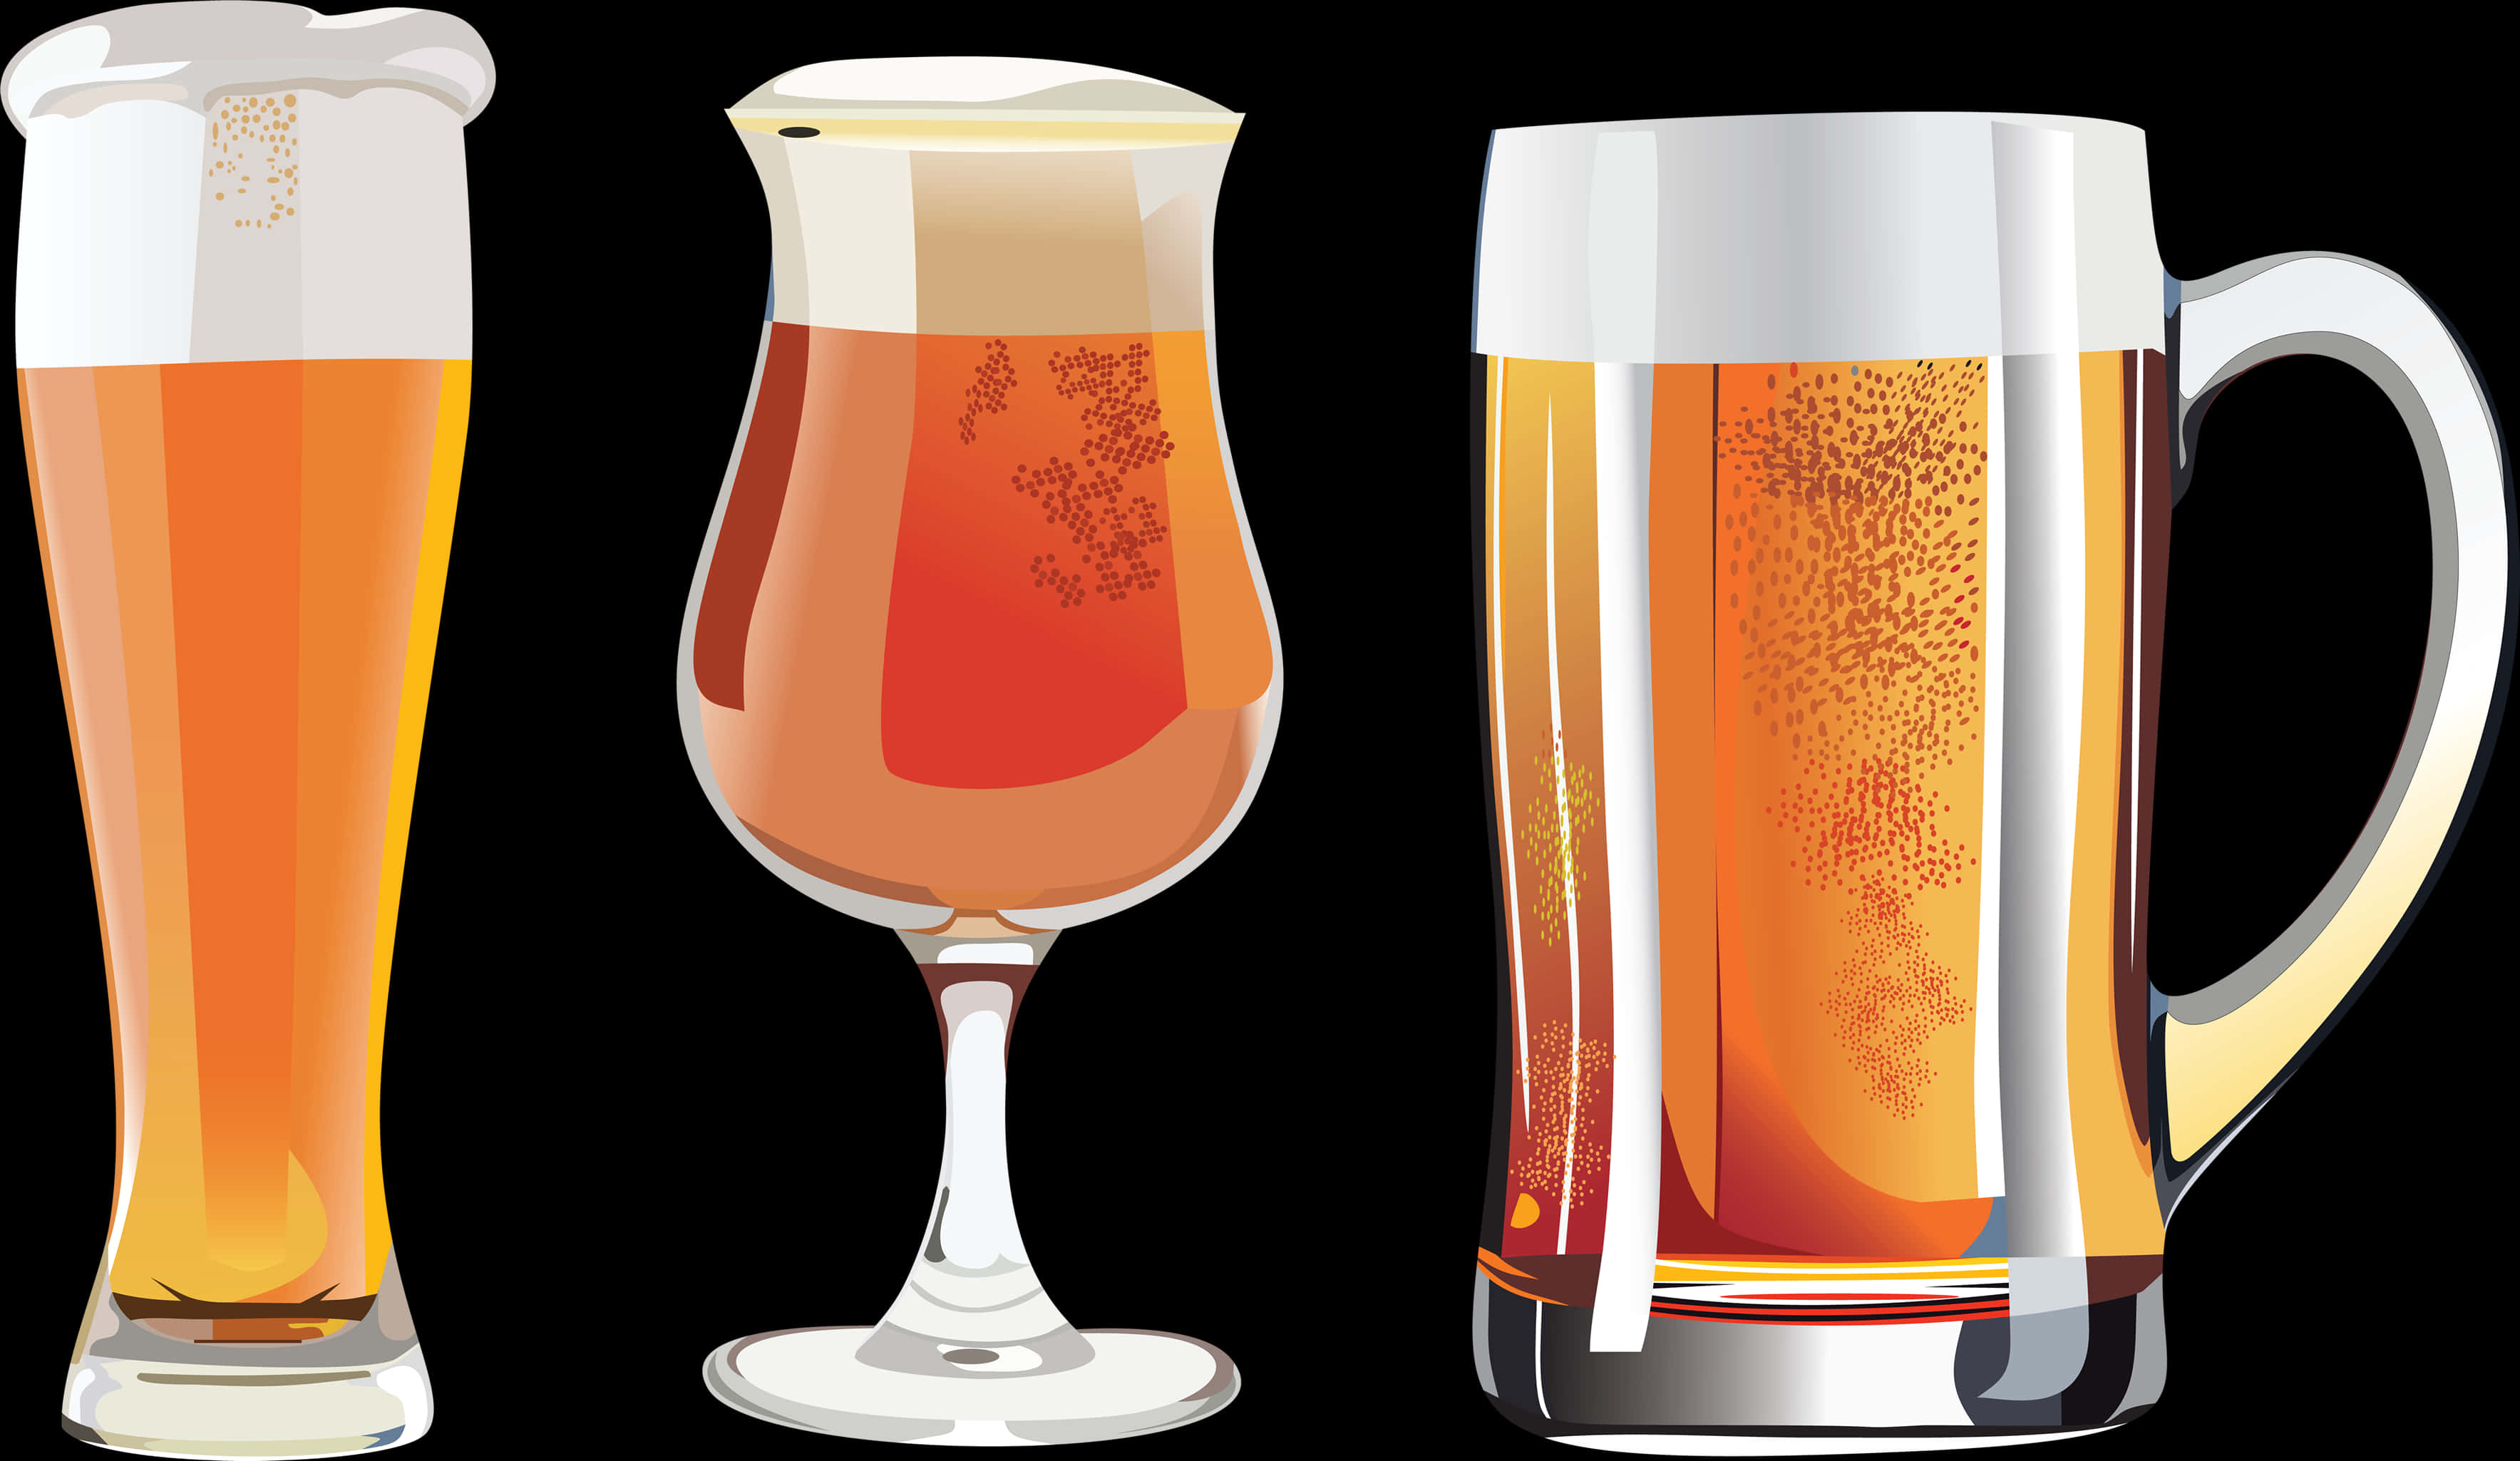 Varietyof Beer Glasses Illustration PNG image